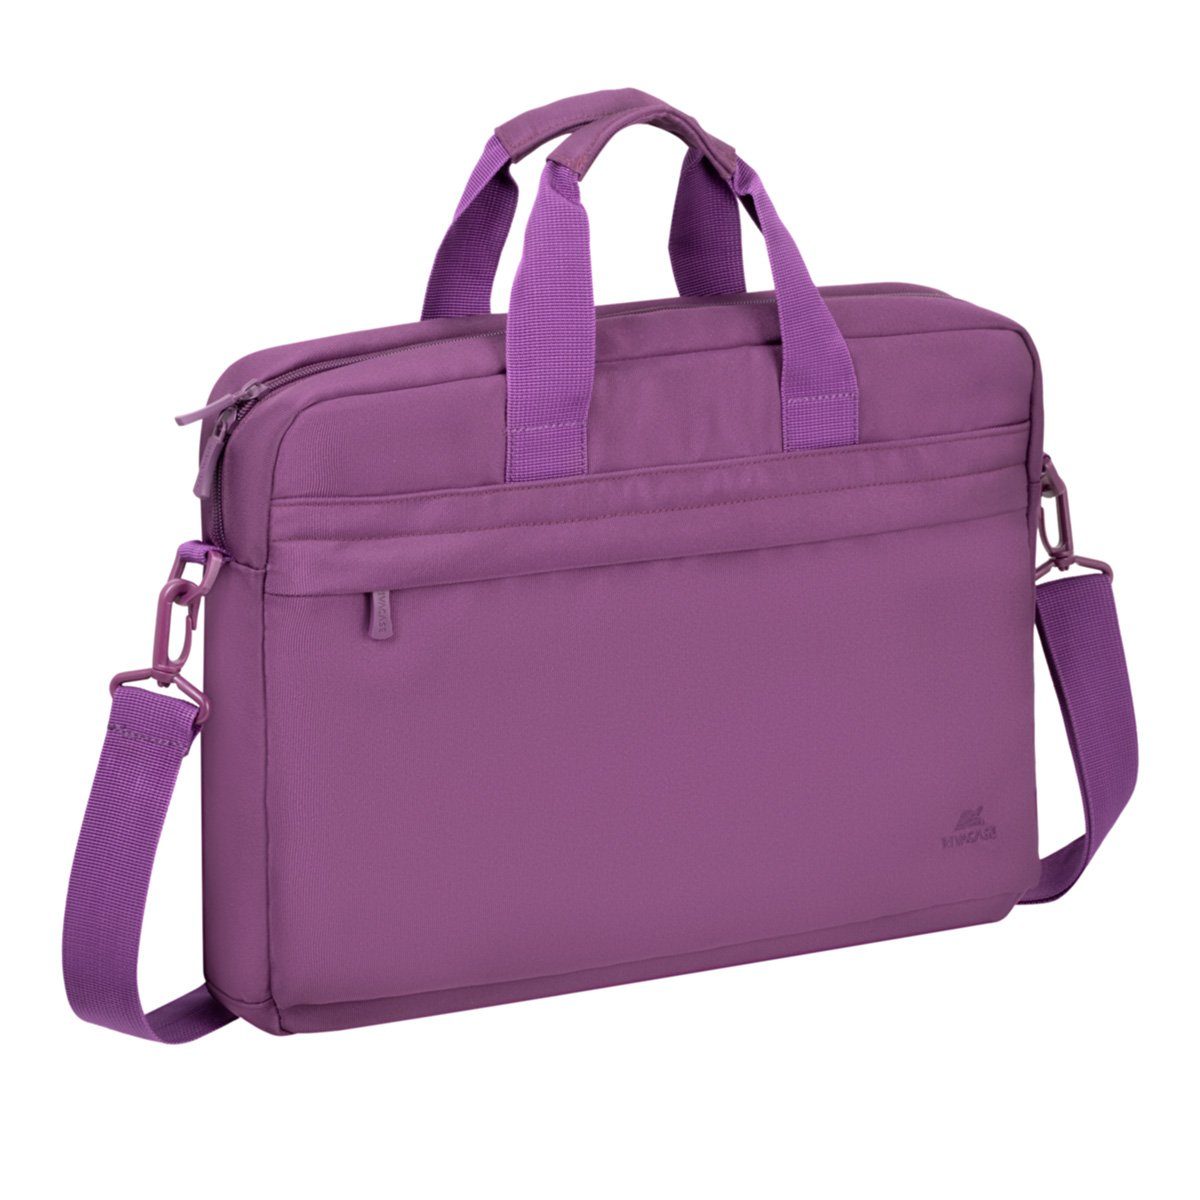 Rivacase Rucksack Laptoptasche 14 Zoll - wasserabweisende Aktentasche für Business, Uni violet